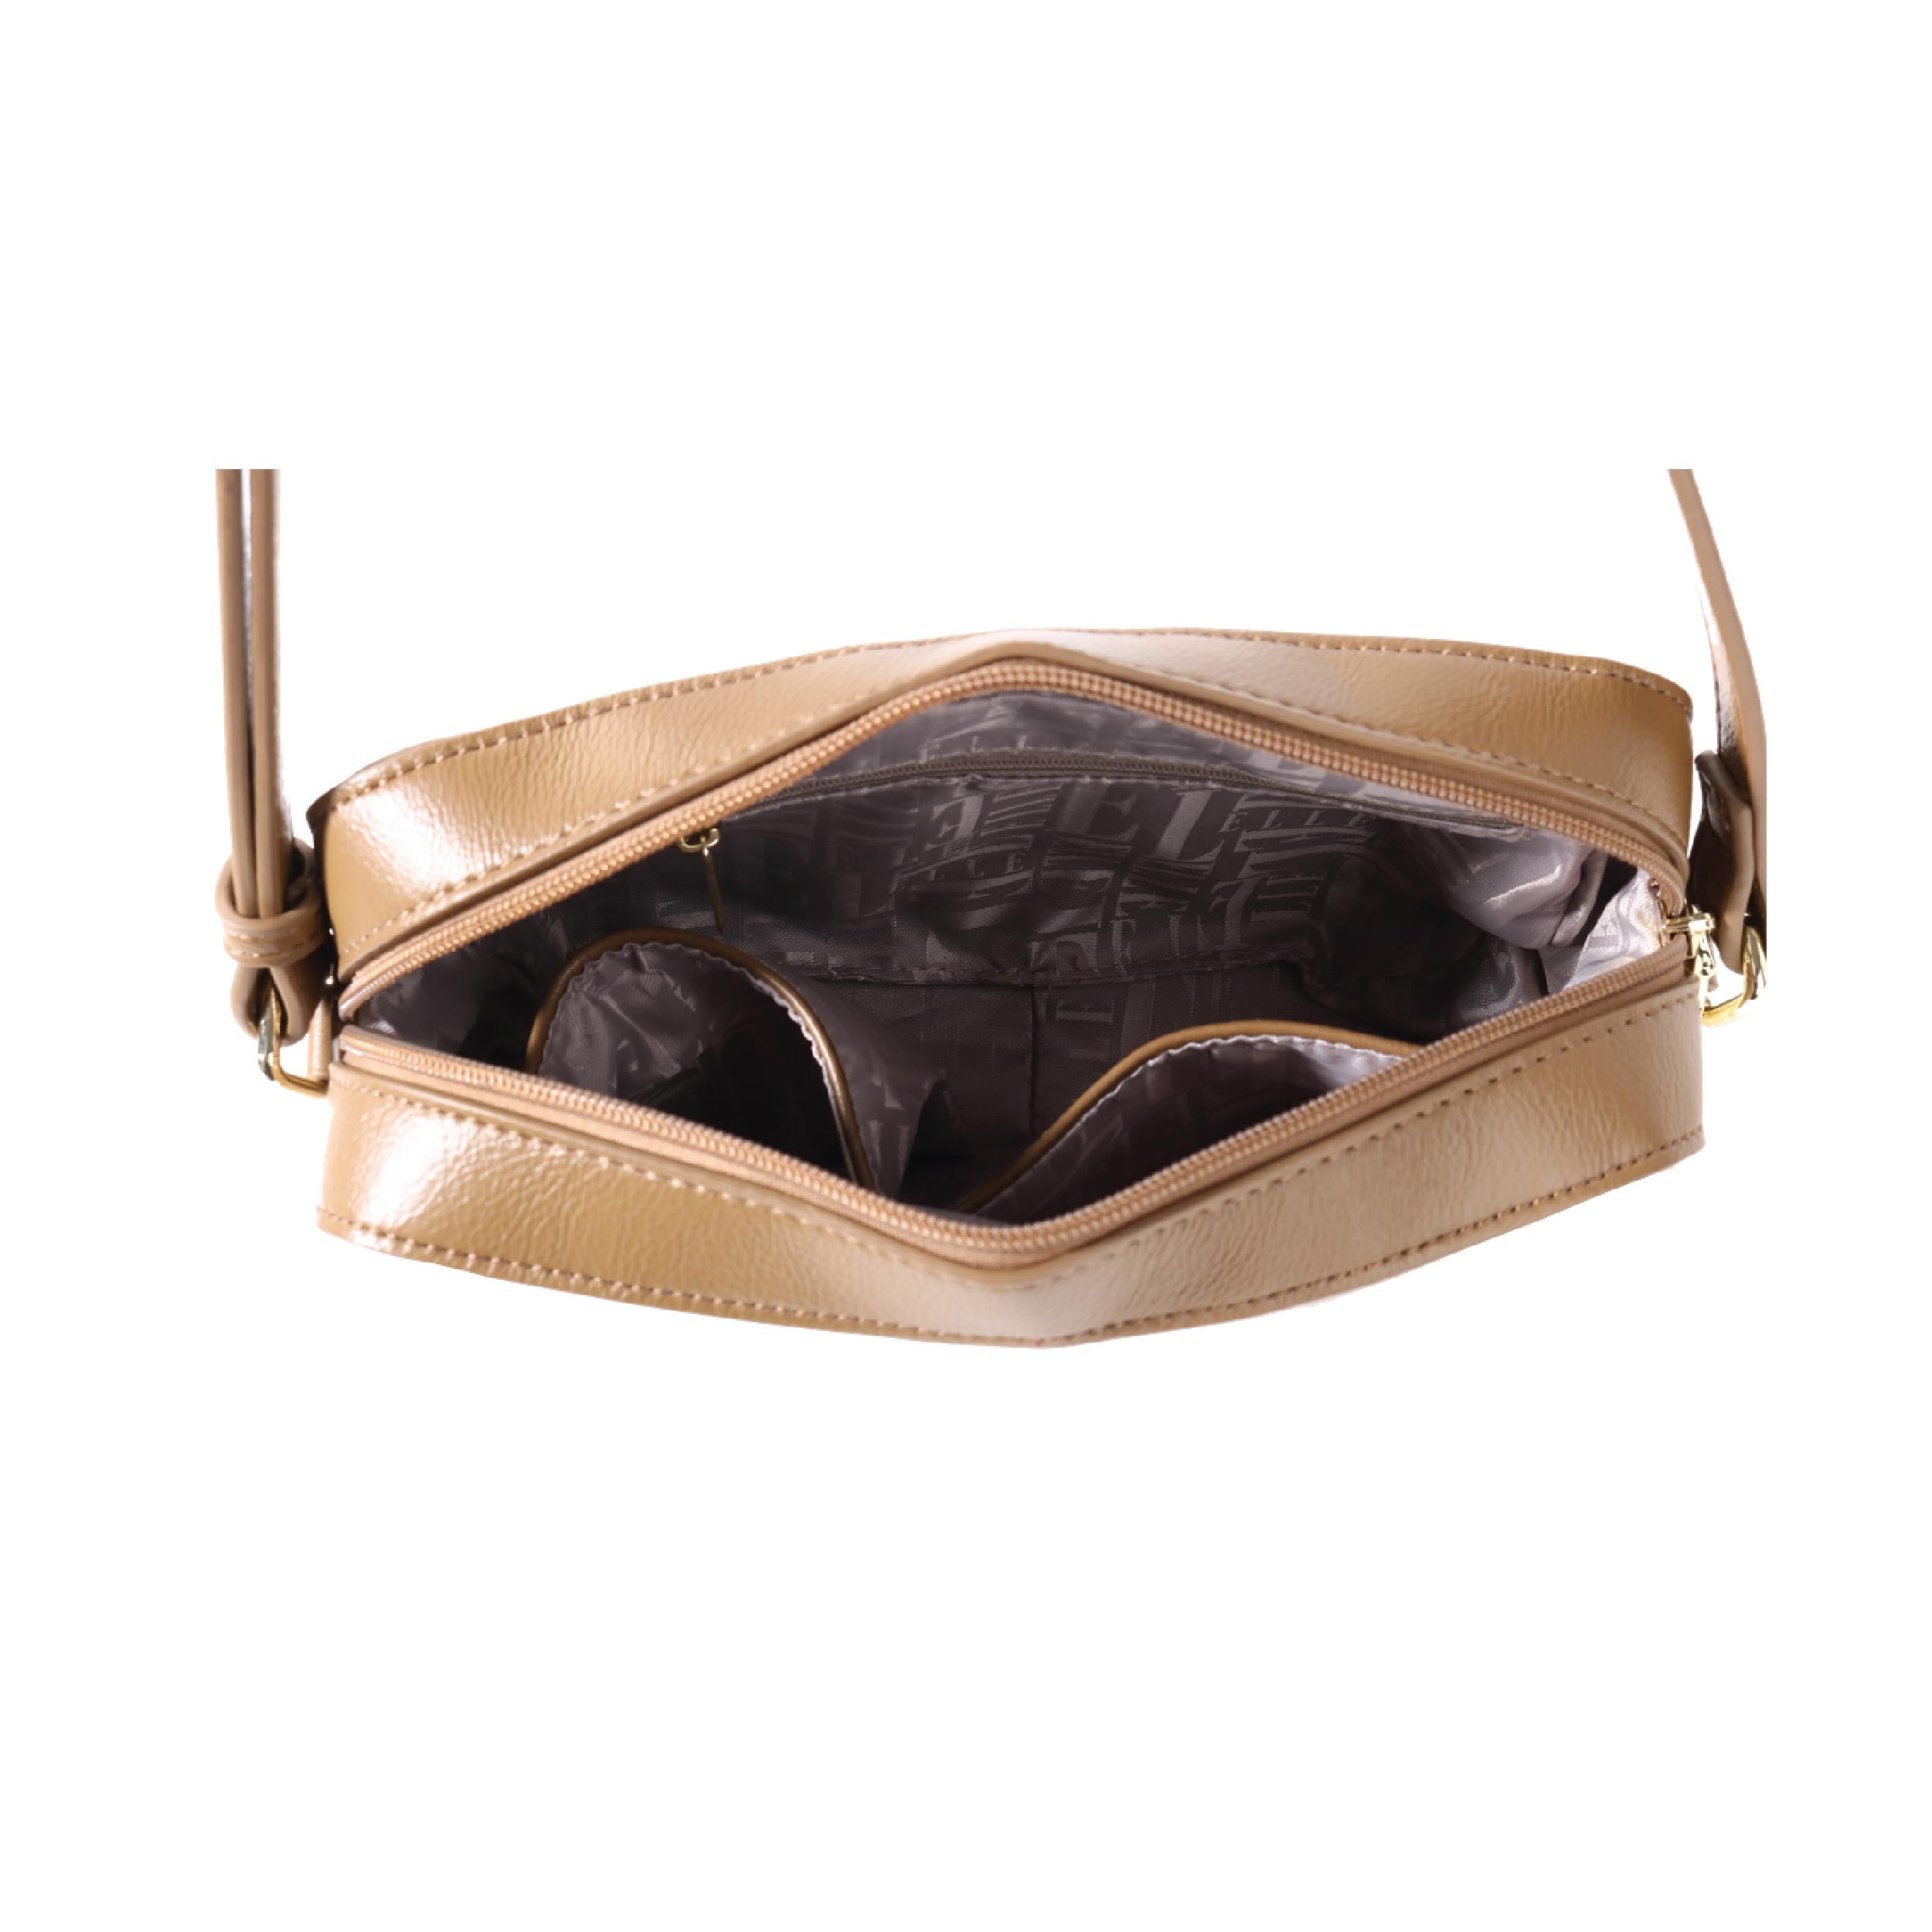 ELLE ELLE Cammi Camera bag in Smoked in Taupe | Isetan KL Online Store